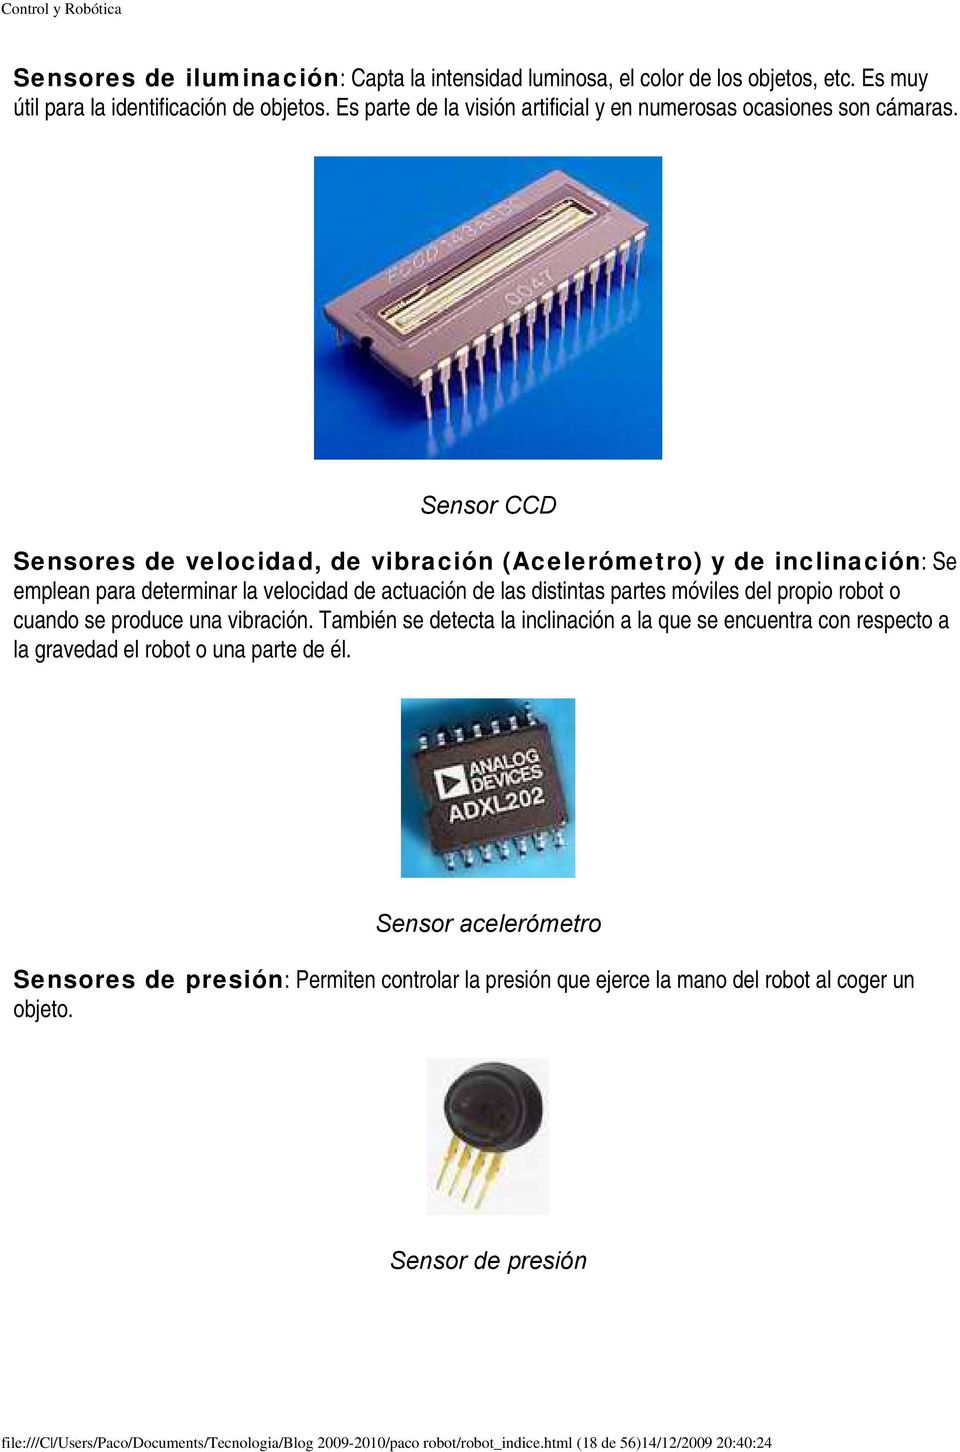 Sensor CCD Sensores de velocidad, de vibración (Acelerómetro) y de inclinación: Se emplean para determinar la velocidad de actuación de las distintas partes móviles del propio robot o cuando se